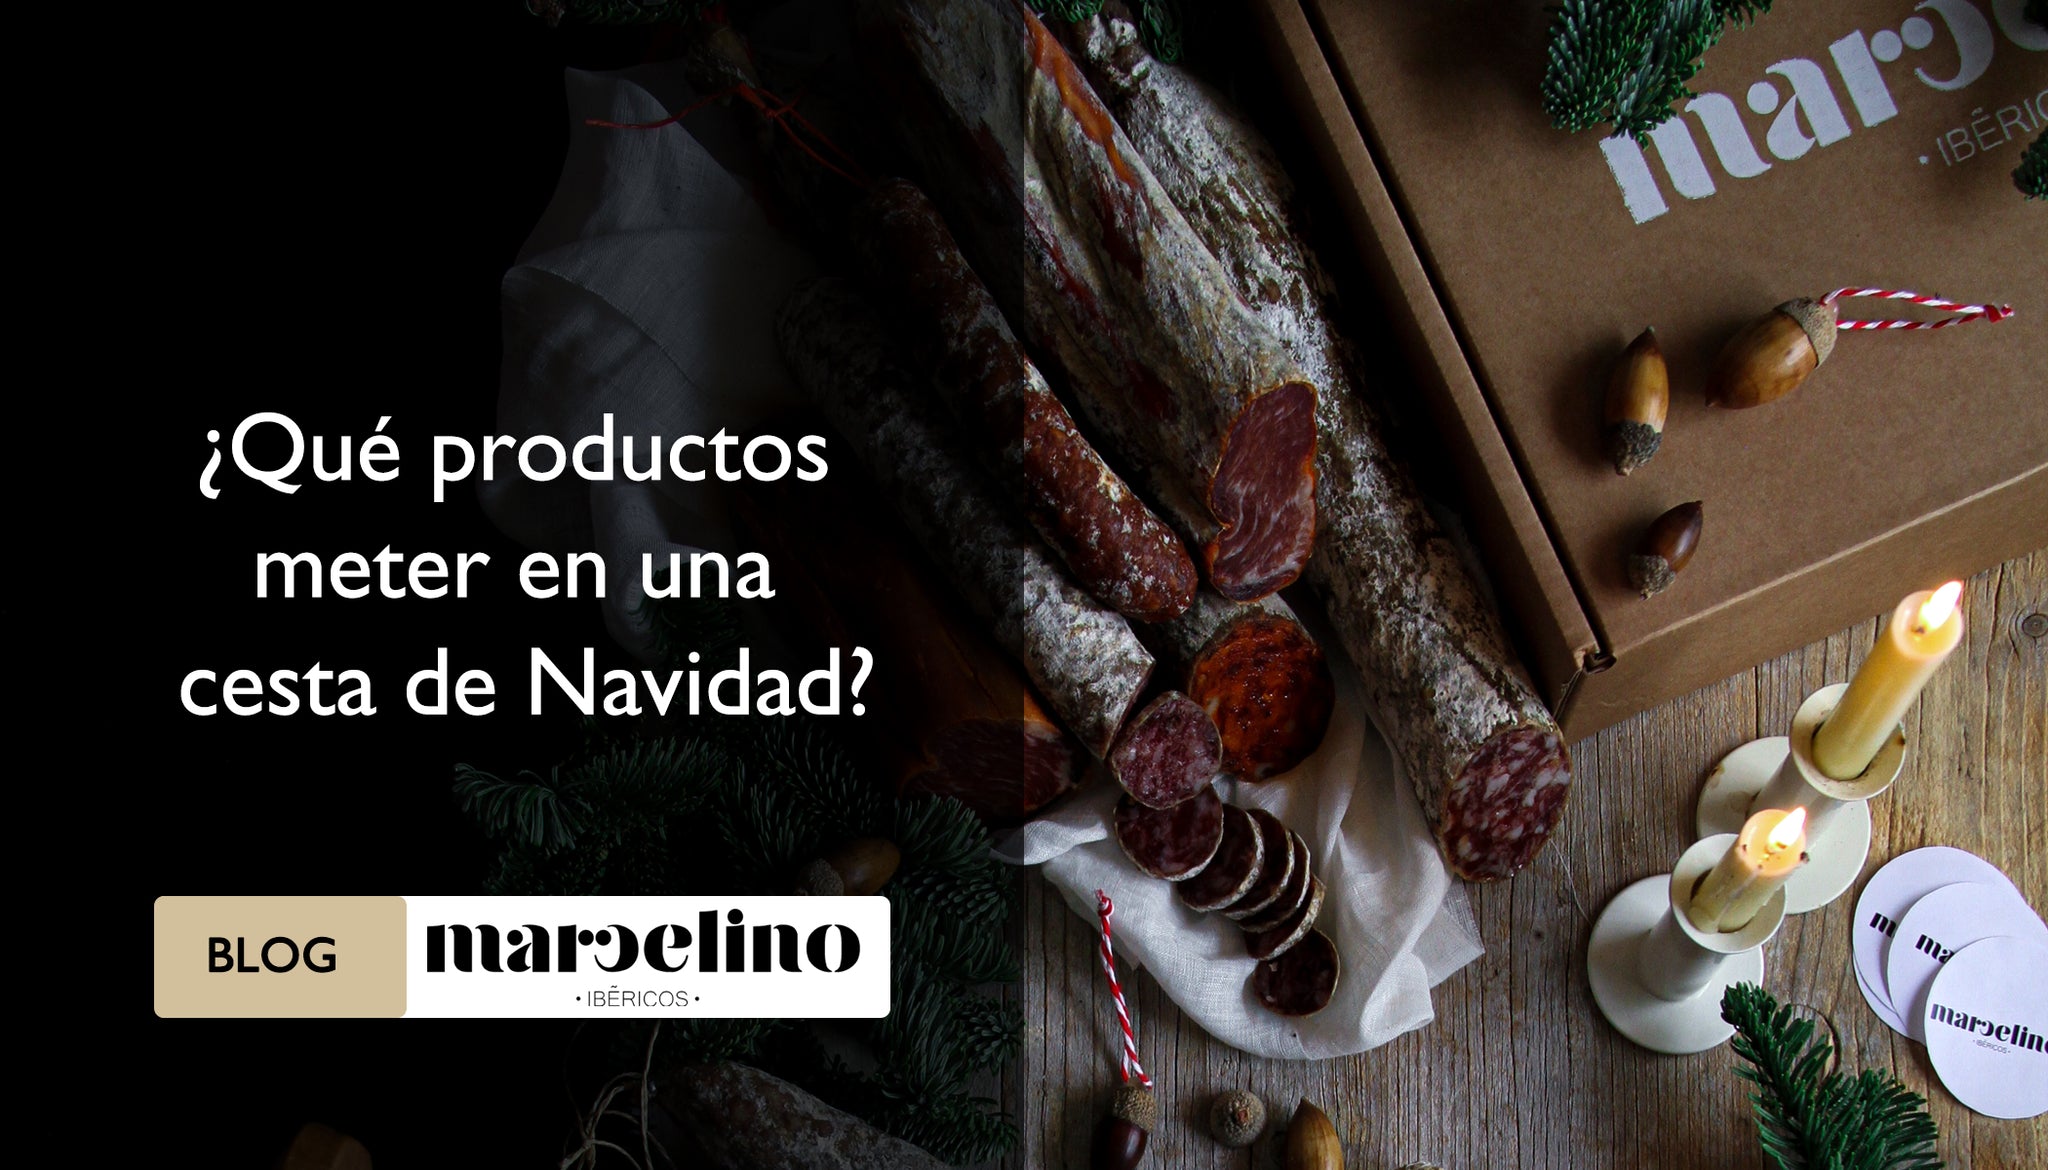 Cesta de Navidad de productos ibericos - Marcelino Ibericos